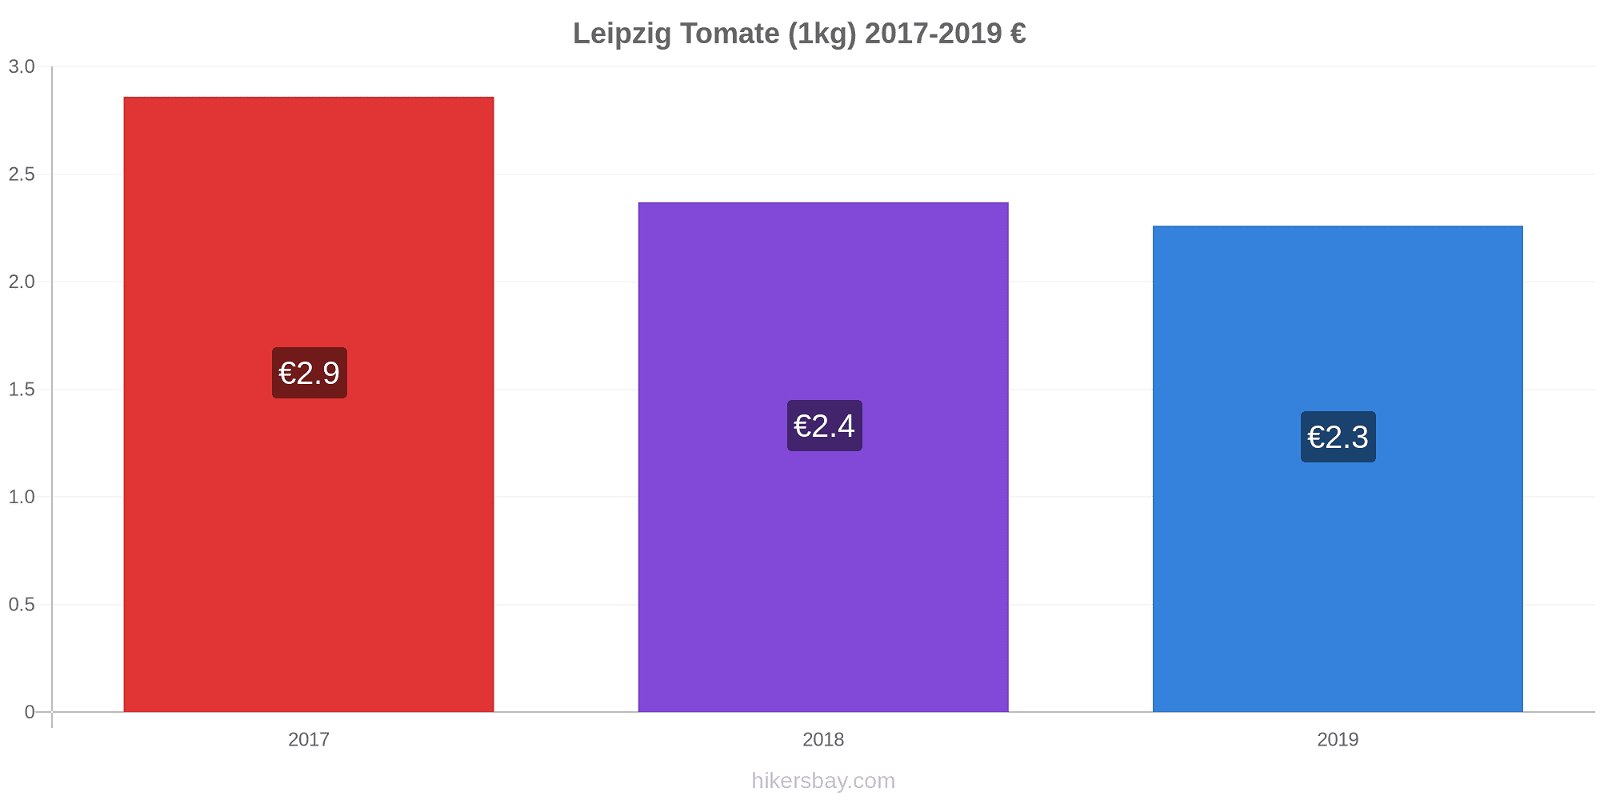 Leipzig cambios de precios Tomate (1kg) hikersbay.com